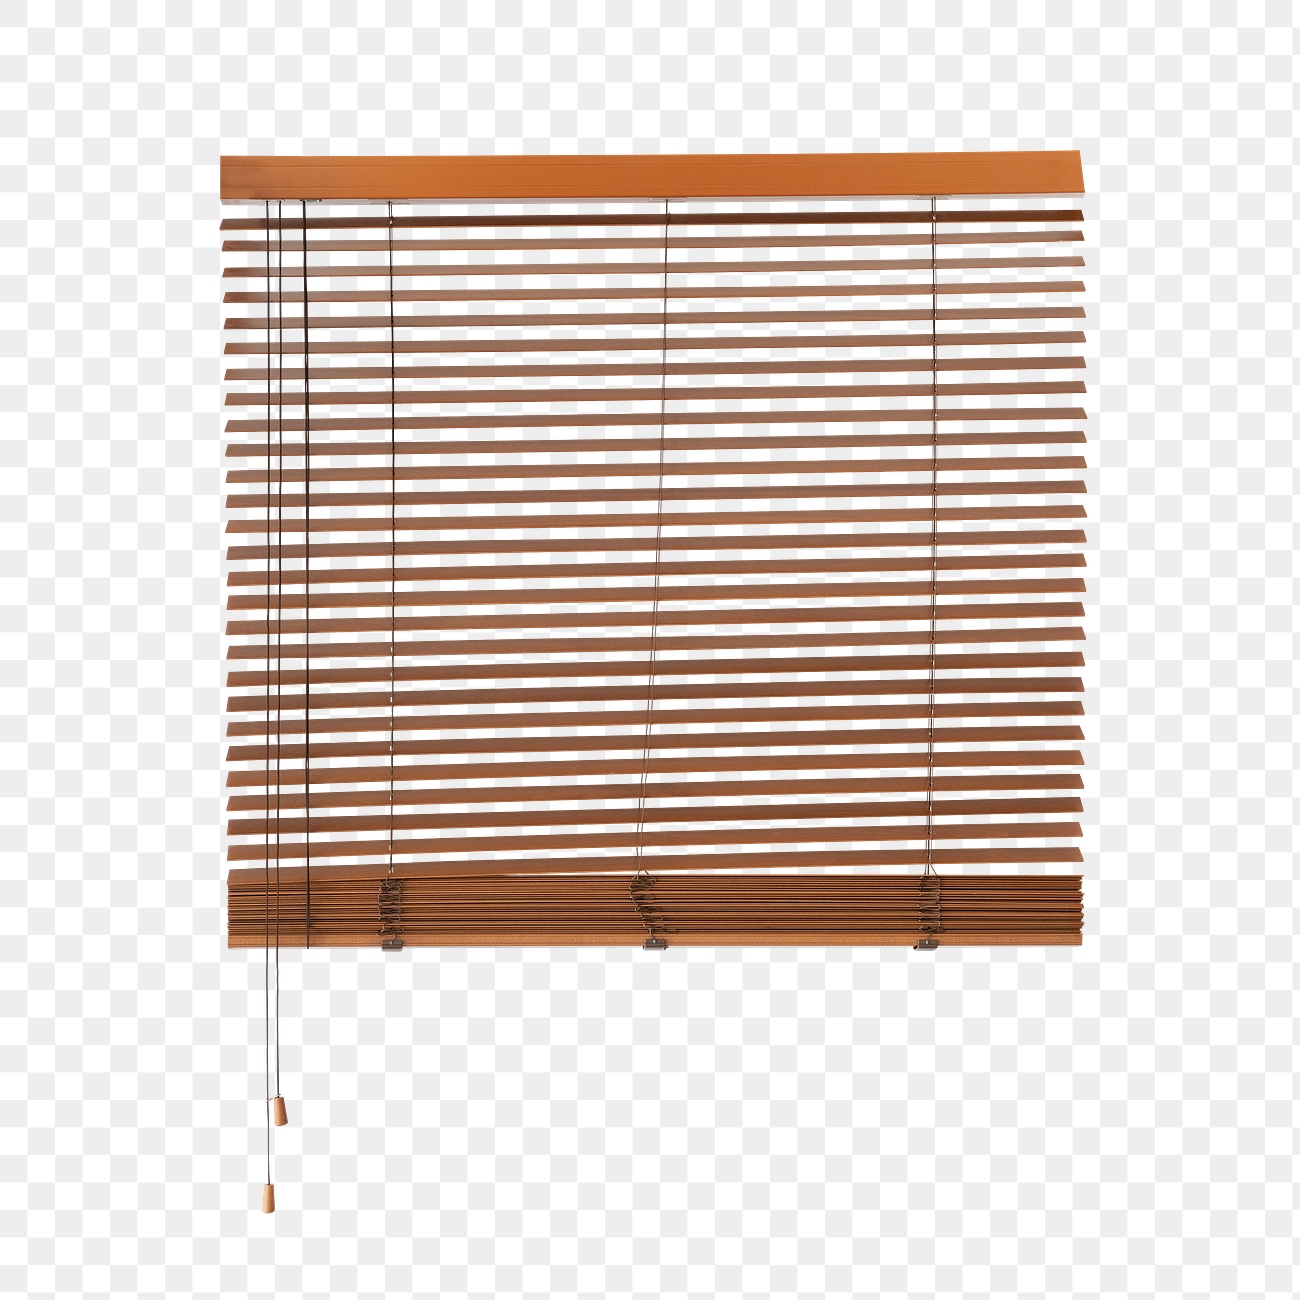 Vintage wooden blinds design element